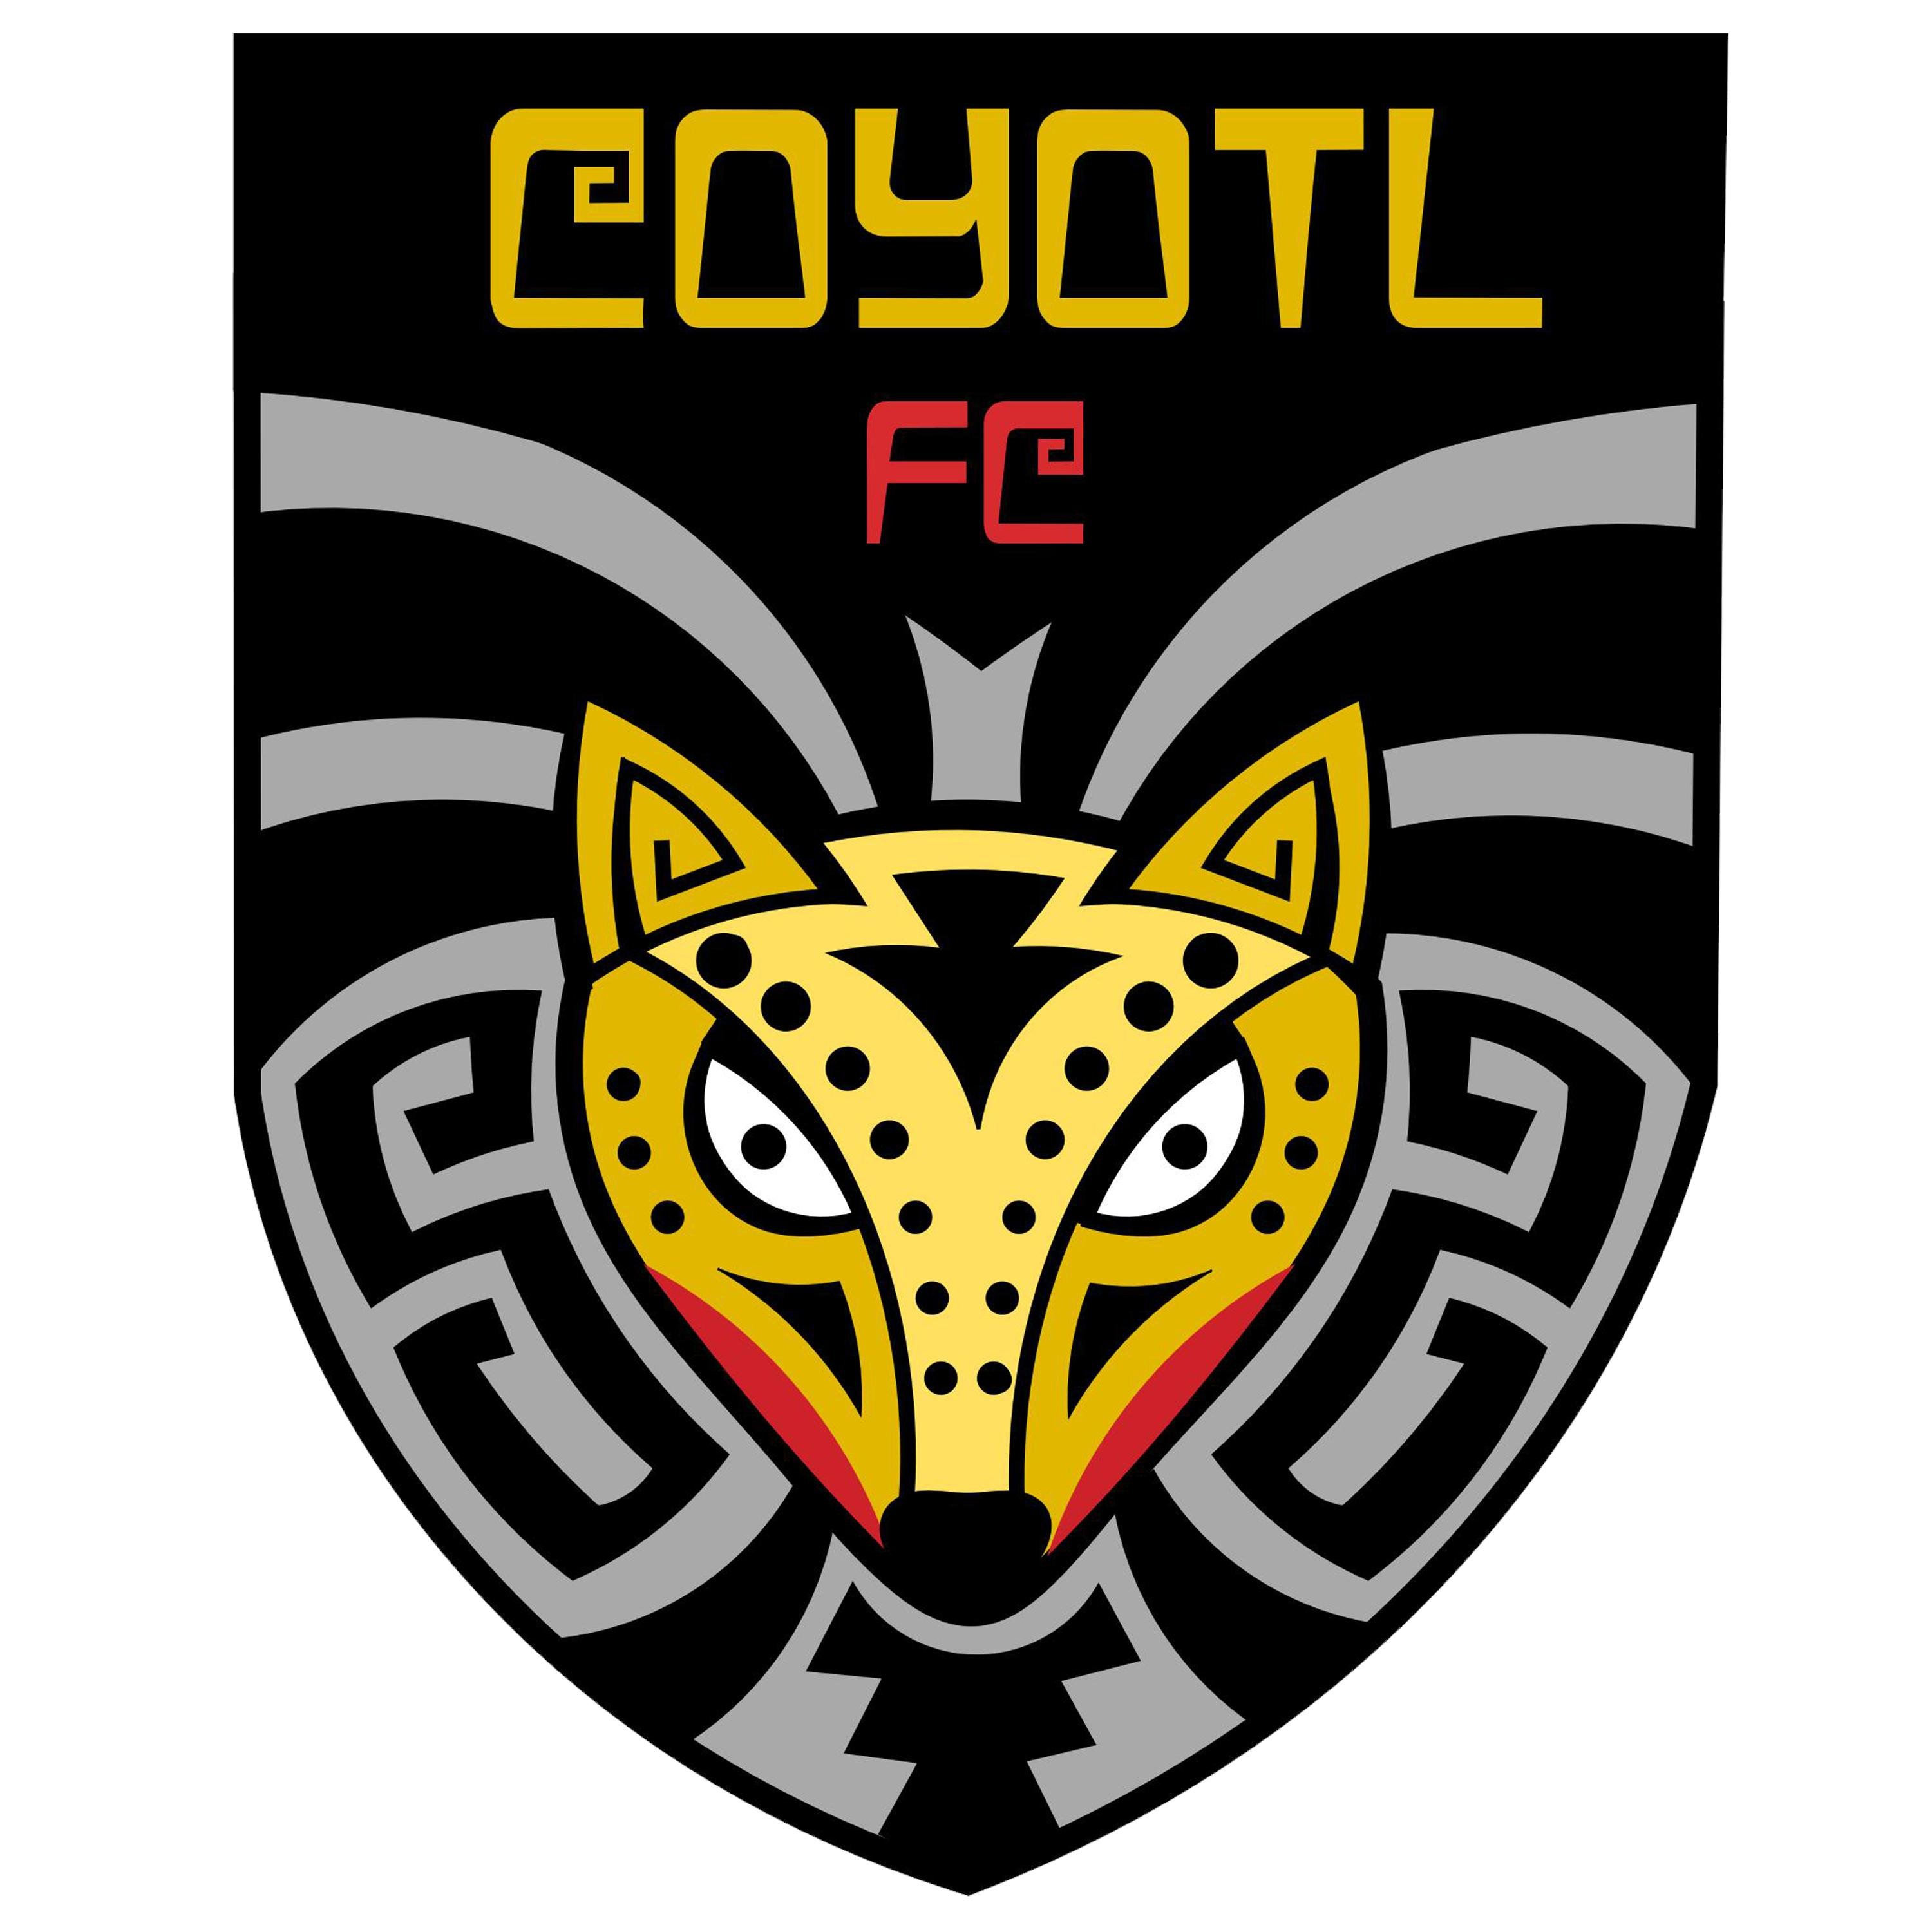 Coyotl F.C. del Comude Tlajomulco, equipo de futbol amateur que participa en la Copa Jalisco 2019 y en la copa Escandinavia 2020